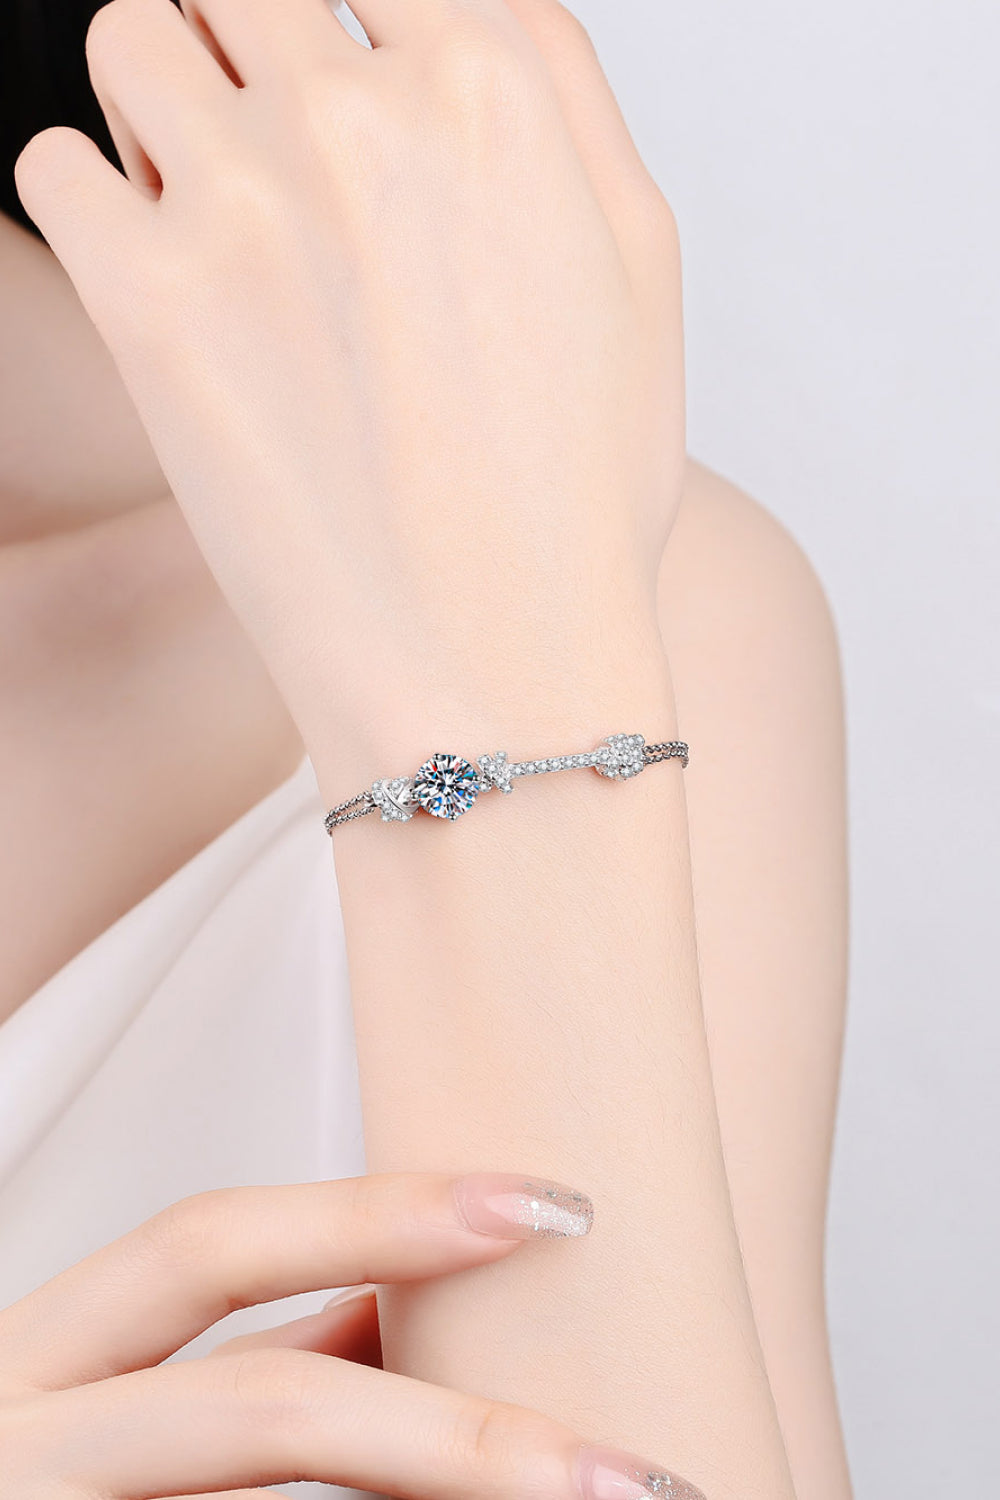 Gleaming Treasure Bracelet by Metopia Designs